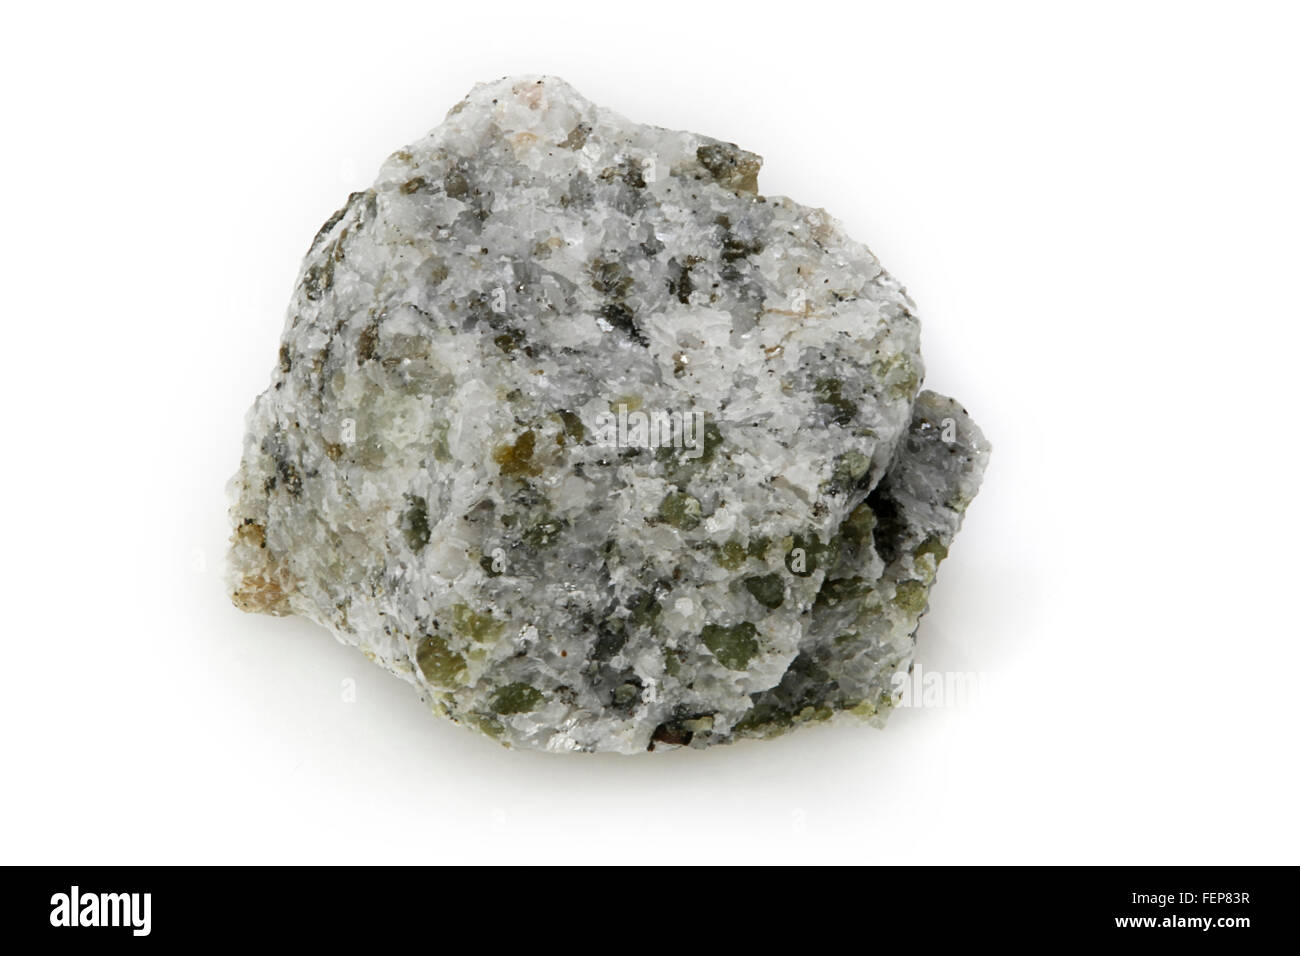 Le gabbro à olivine, roches ignées, les roches plutoniques, Grenville, Québec, Canada Banque D'Images